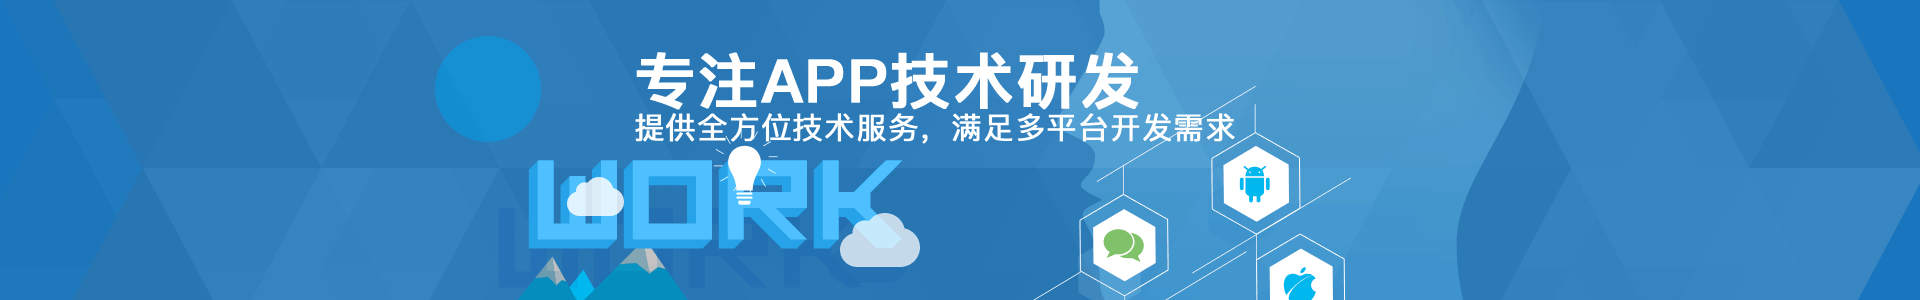 深圳APP开发,手机APP软件开发